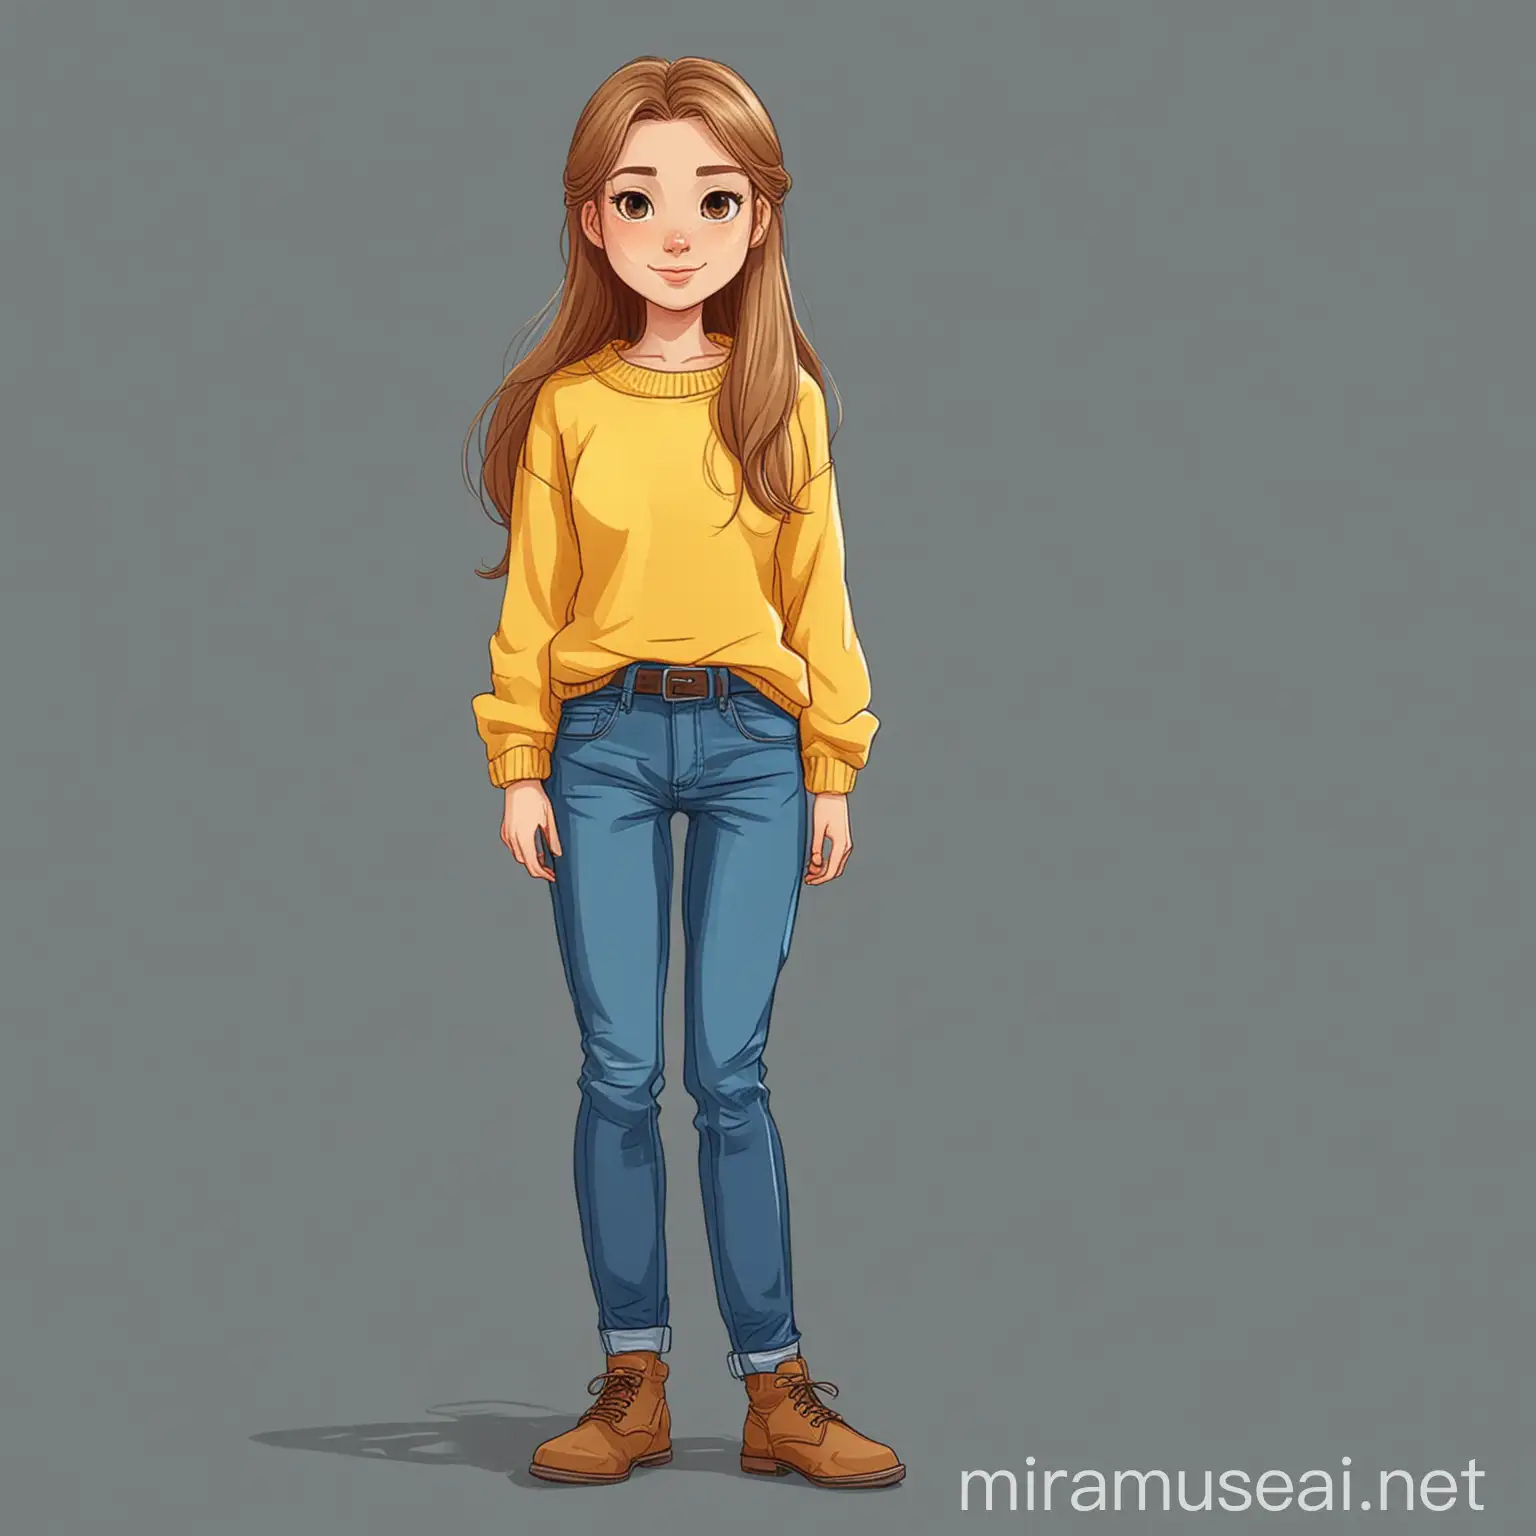 нарисуй персонажа девочку в жёлтом свитере и с длинными волосами и в синем джинсах в векторном плоском стиле.